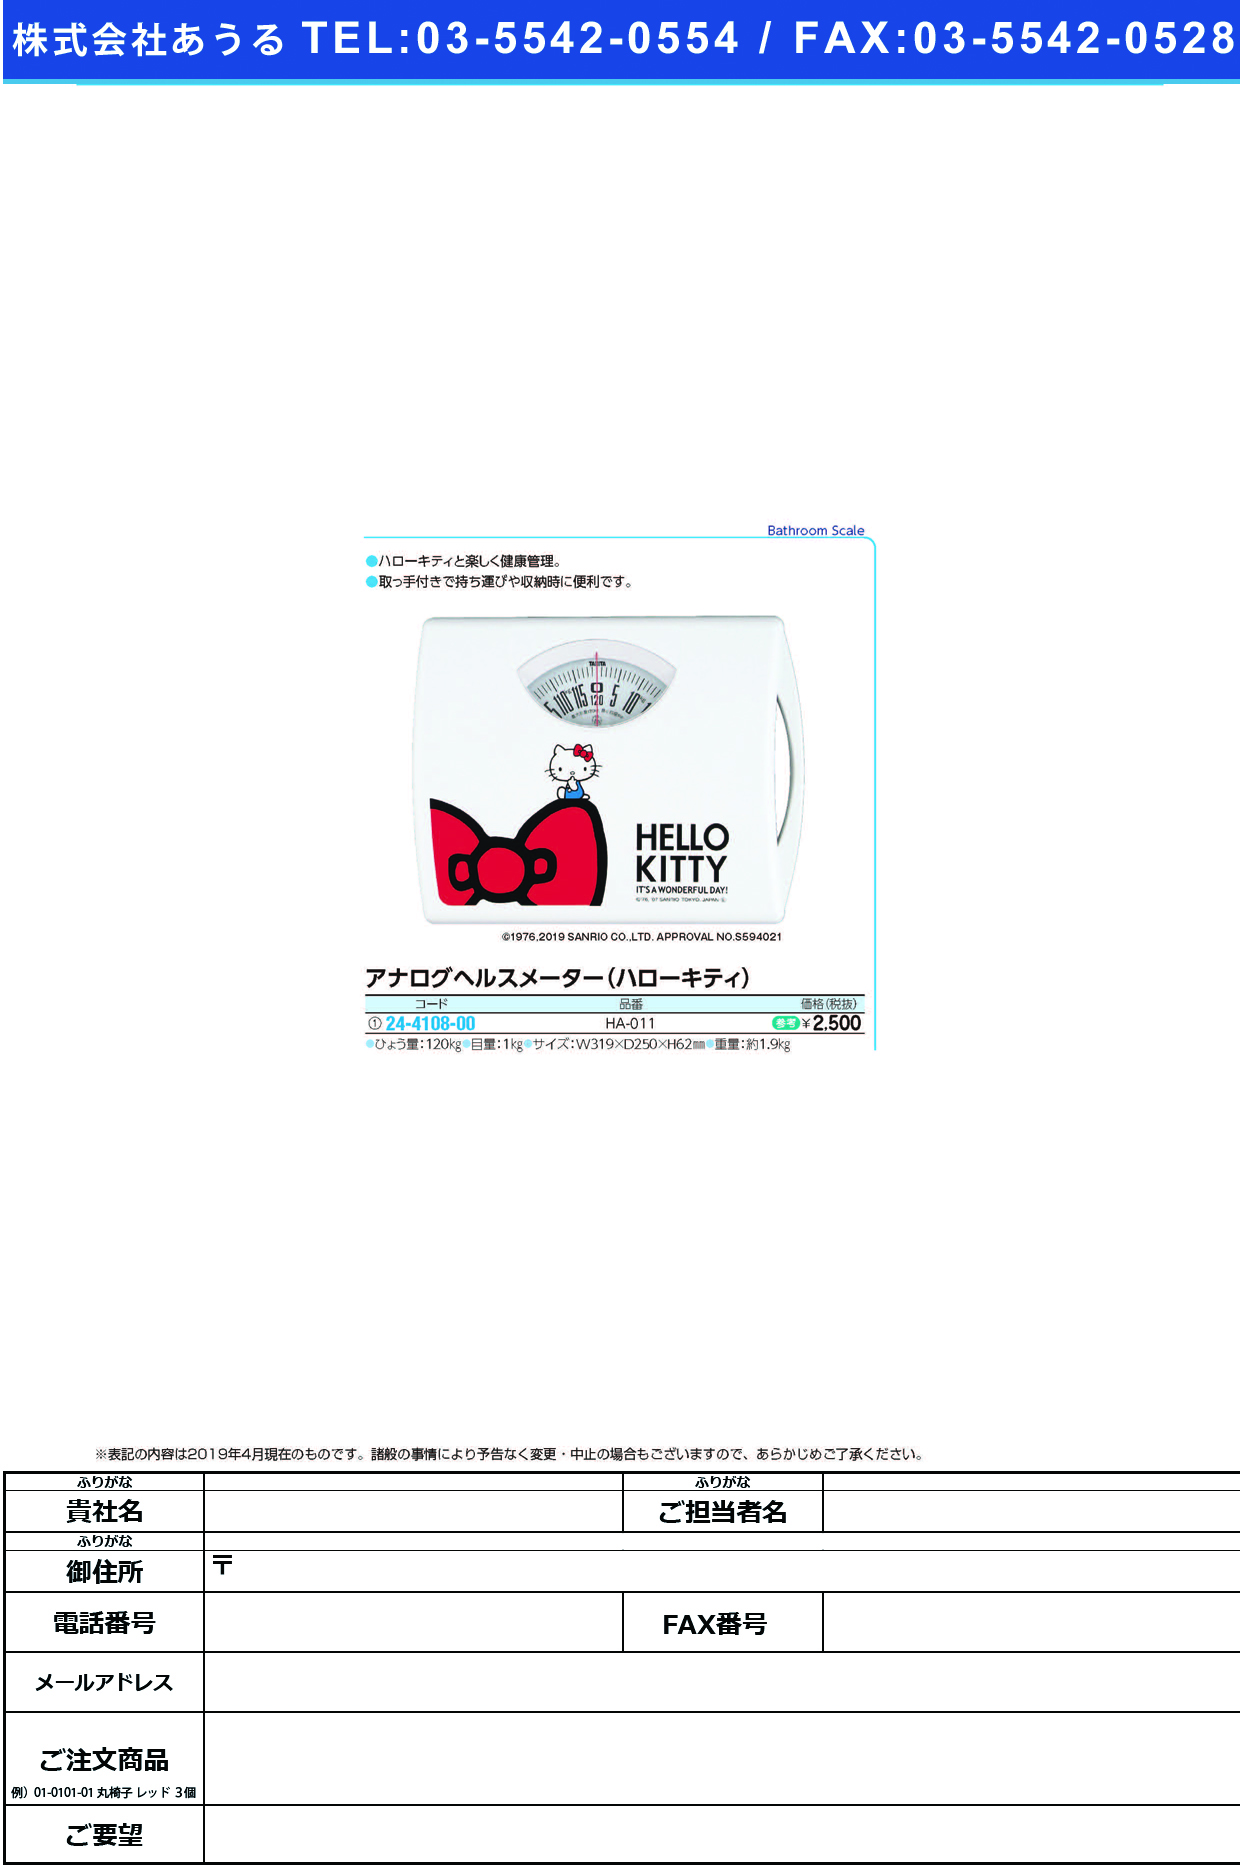 (24-4108-00)ハローキティヘルスメーター HA-011 ﾊﾛｰｷﾃｨﾍﾙｽﾒｰﾀｰ(タニタ)【1台単位】【2019年カタログ商品】